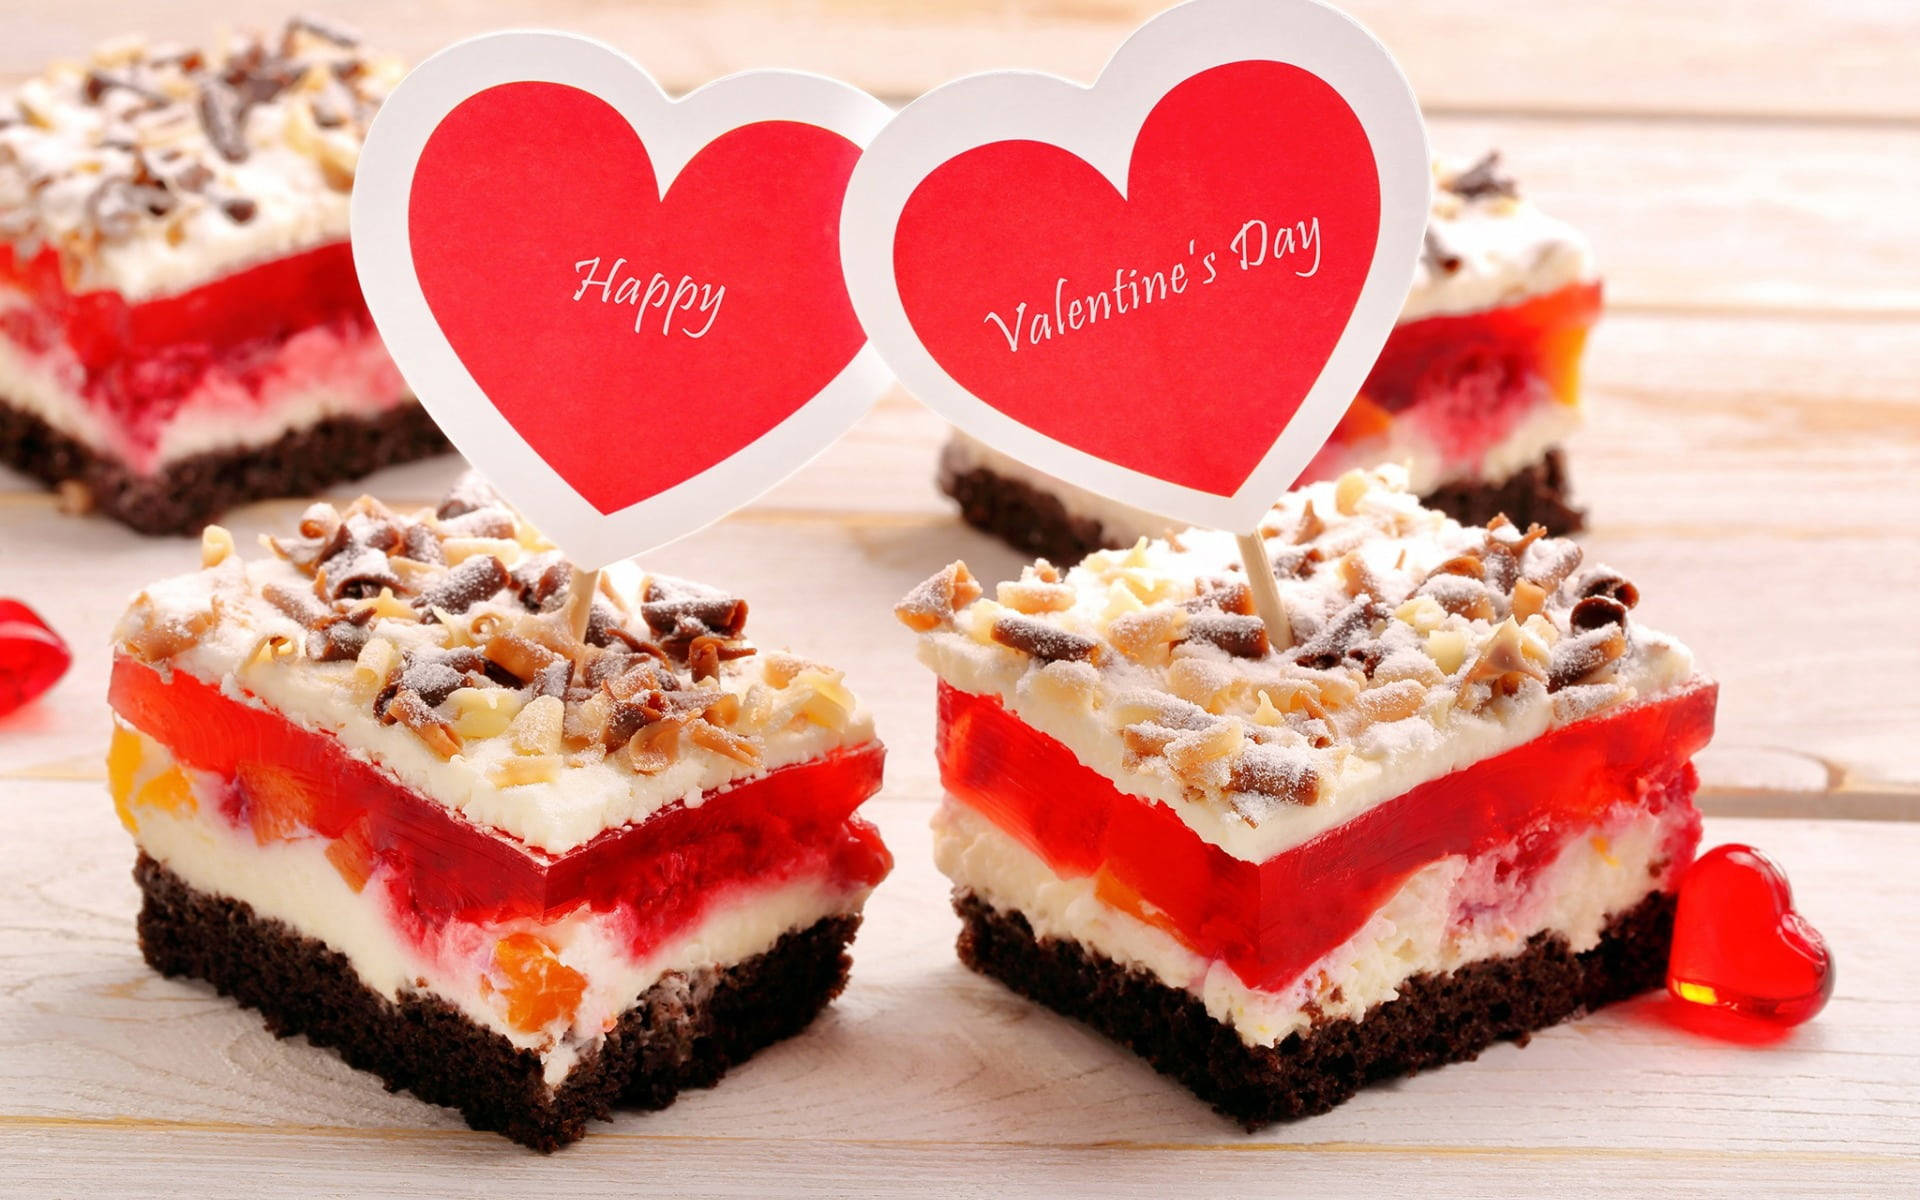 Happy Valentine’s Day Cakes